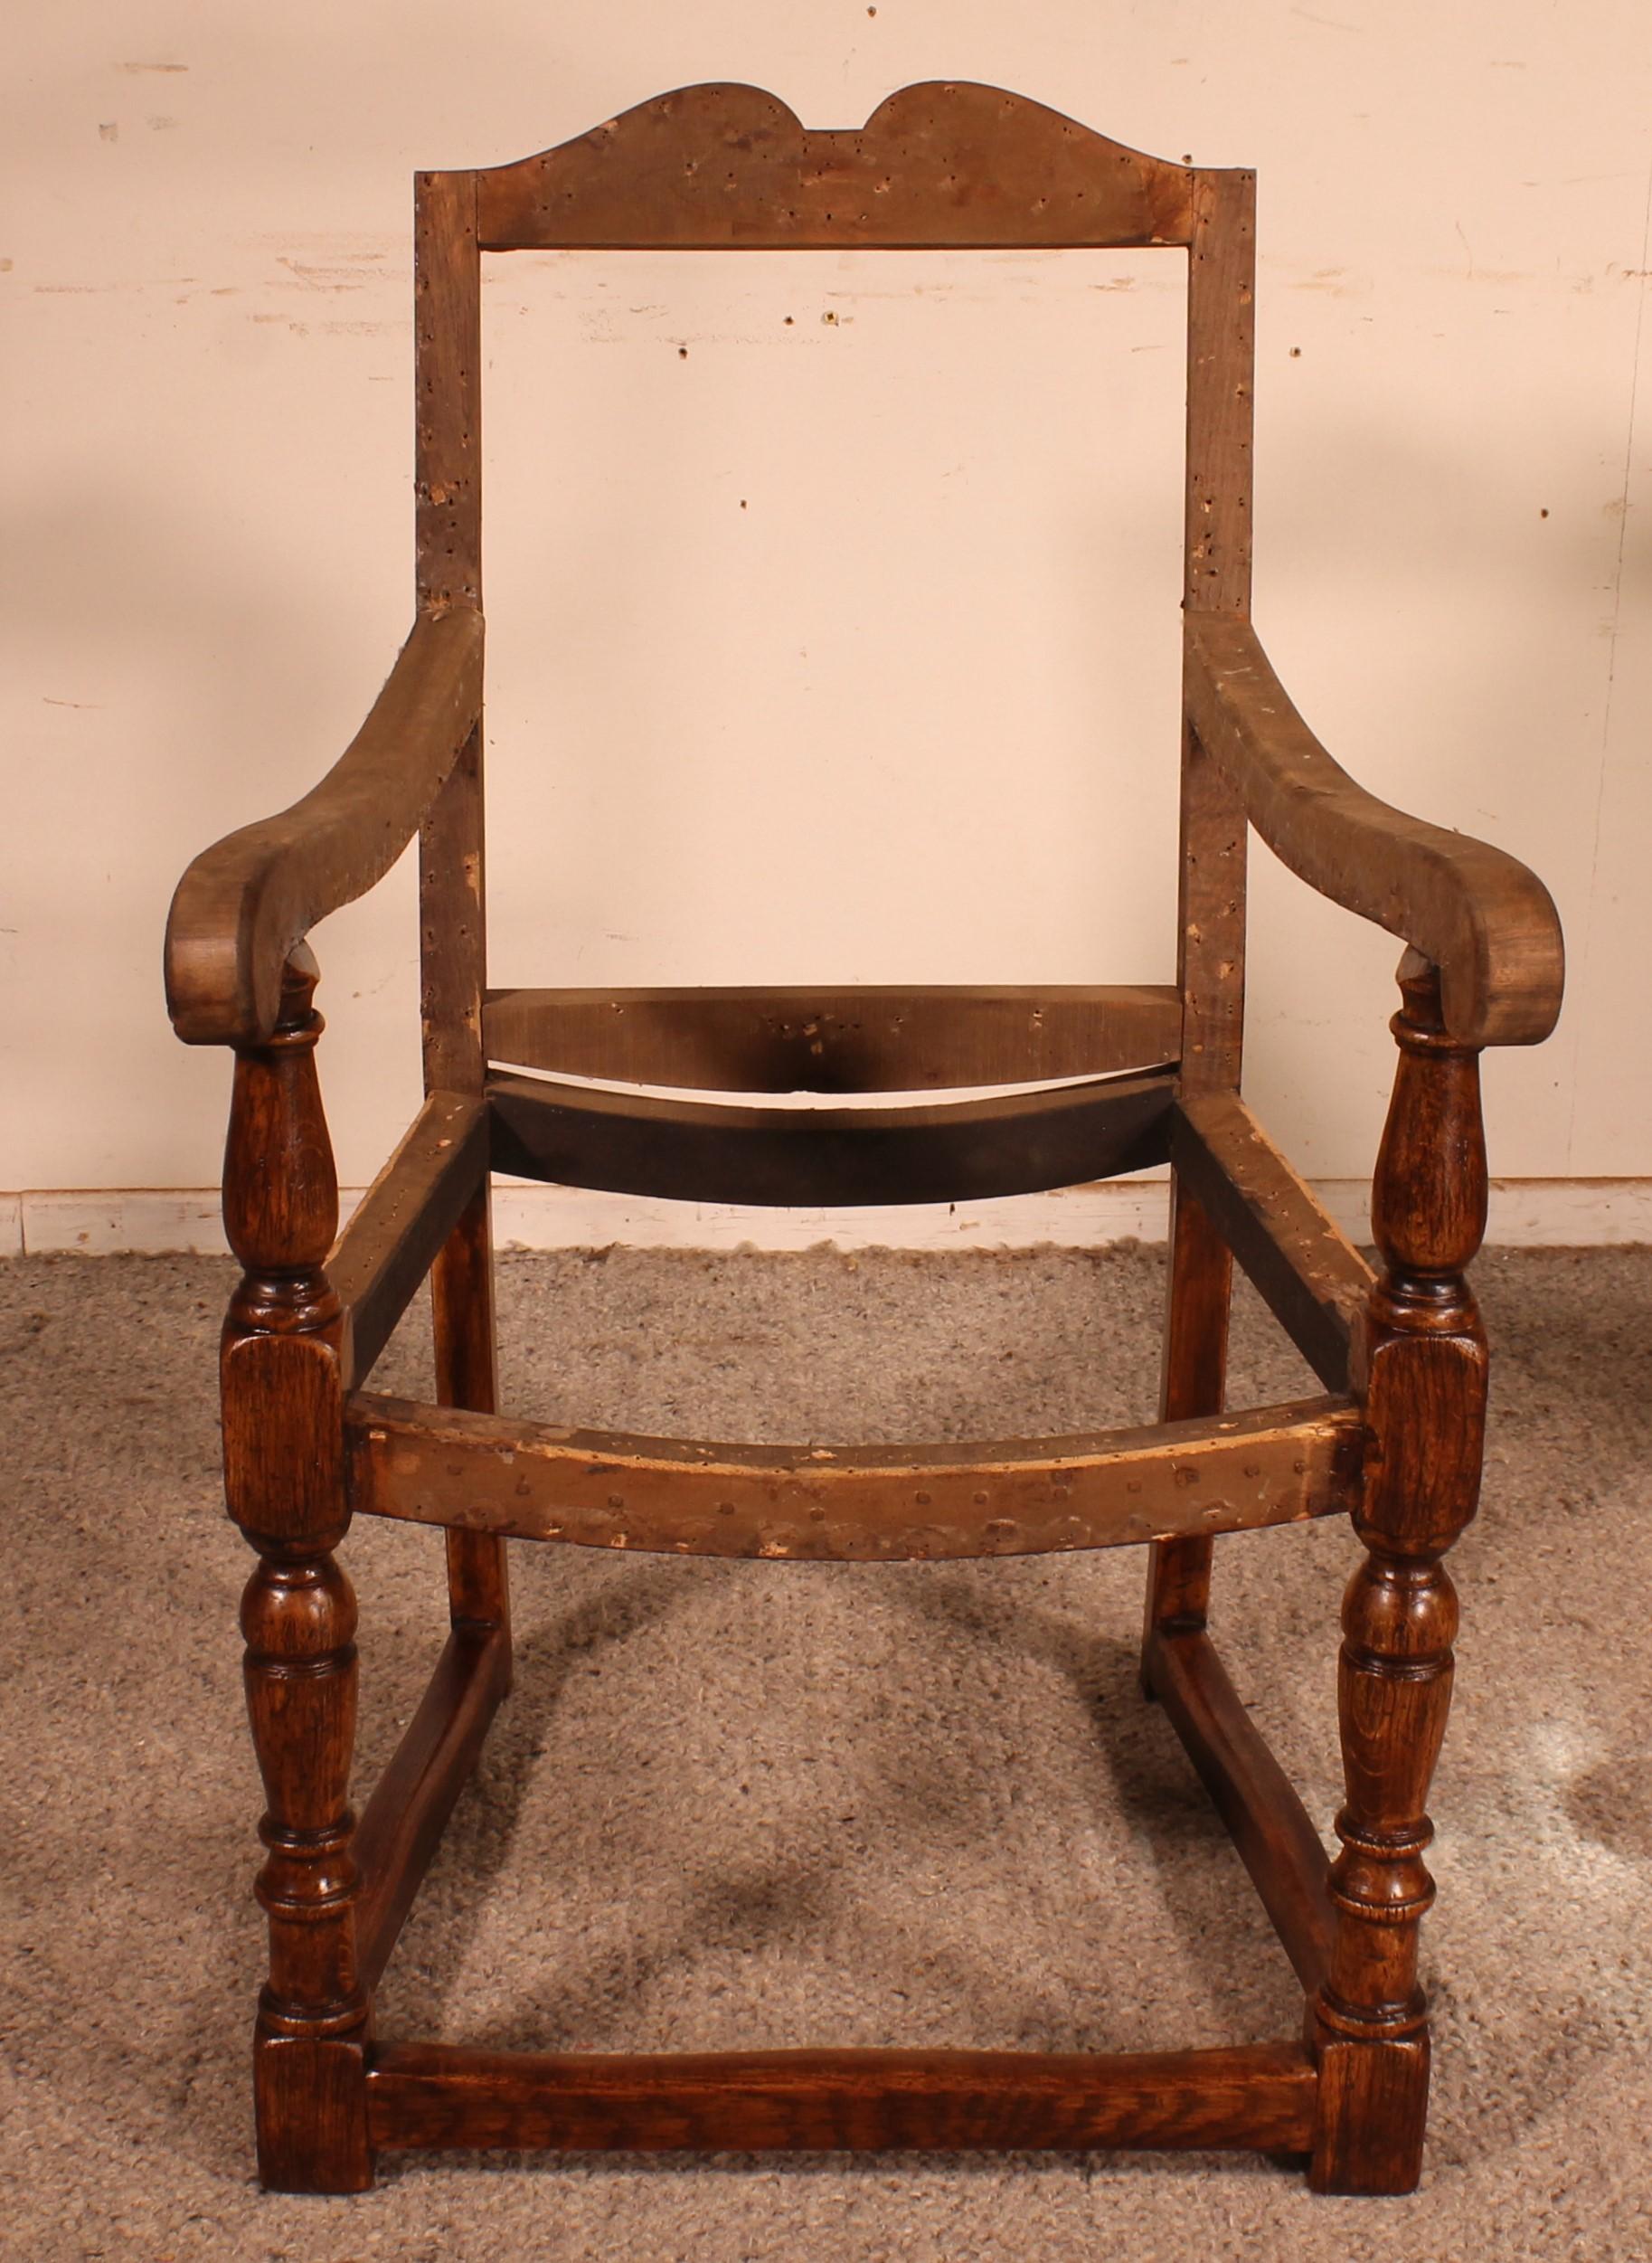 Prächtiger englischer Eichensessel aus der zweiten Hälfte des 18. Jahrhunderts

Sehr schöner Sessel, der in unseren Werkstätten entlackt und patiniert wurde
In perfektem Zustand und sehr schöne Patina

Wir haben beschlossen, ihn nicht neu zu